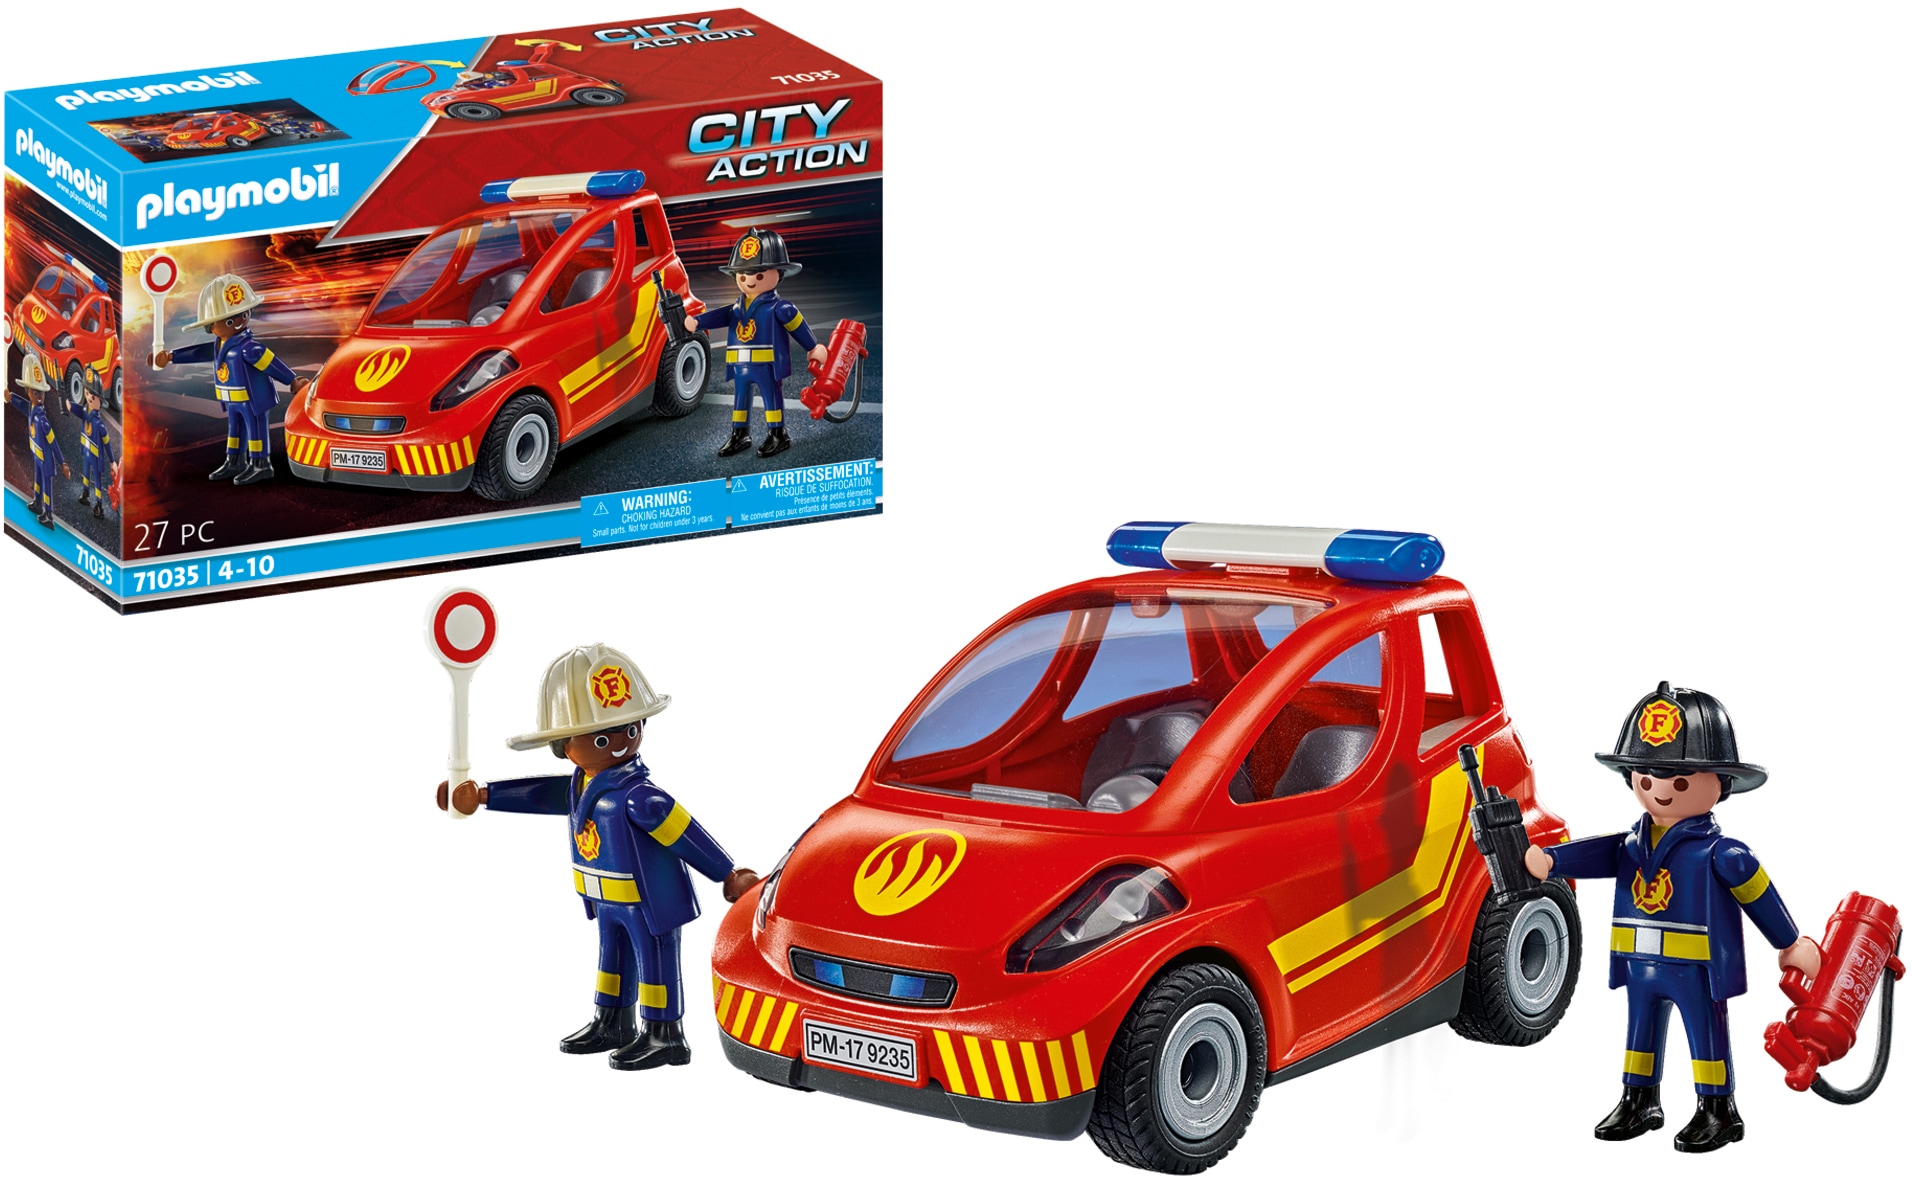 Playmobil® Konstruktions-Spielset City-Action«, OTTO »Feuerwehr Kleinwagen St.), Germany online kaufen (27 in (71035), - Made